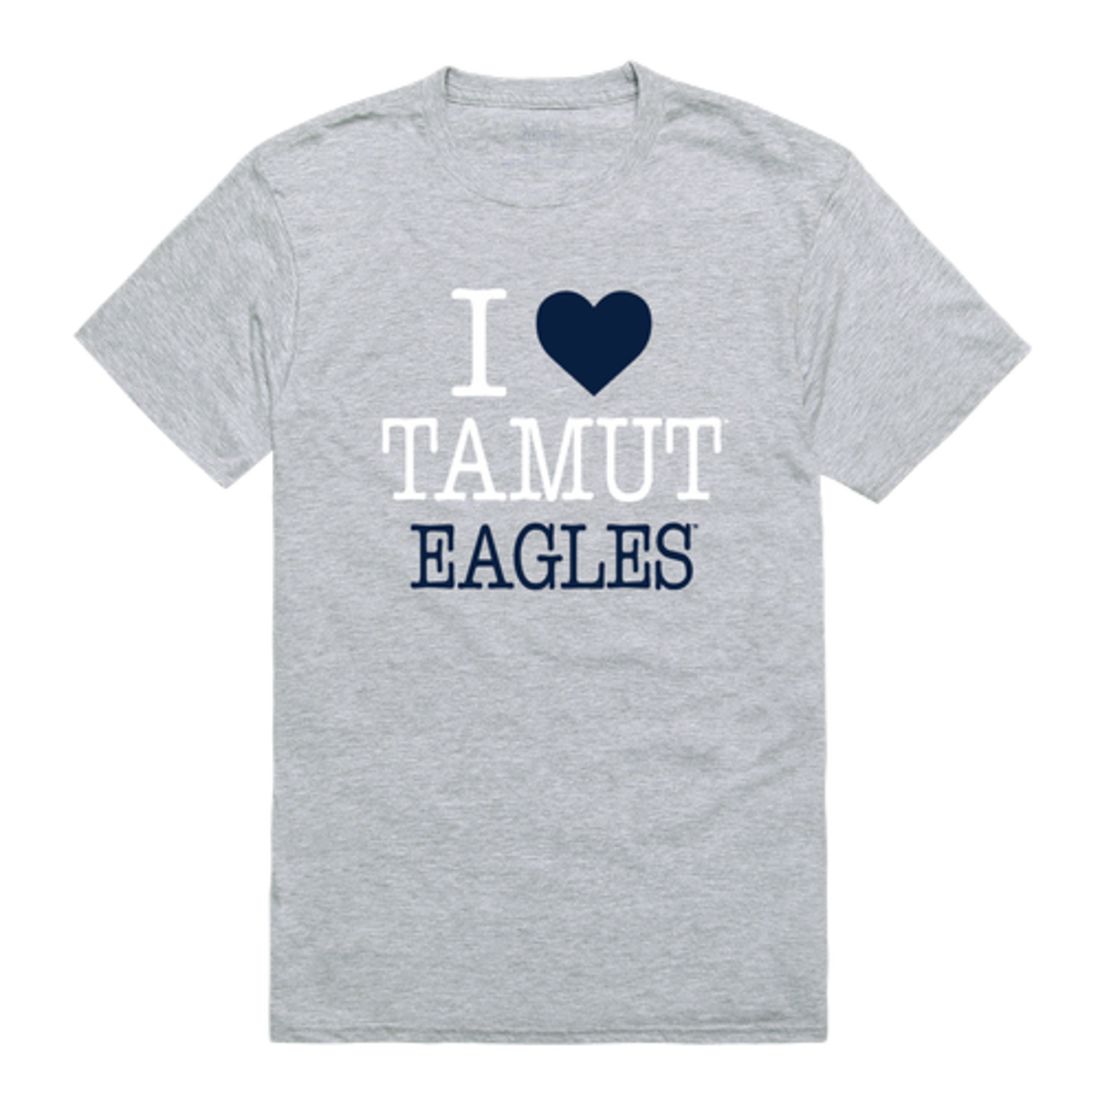 I Love Texas A&M University-Texarkana Eagles T-Shirt Tee